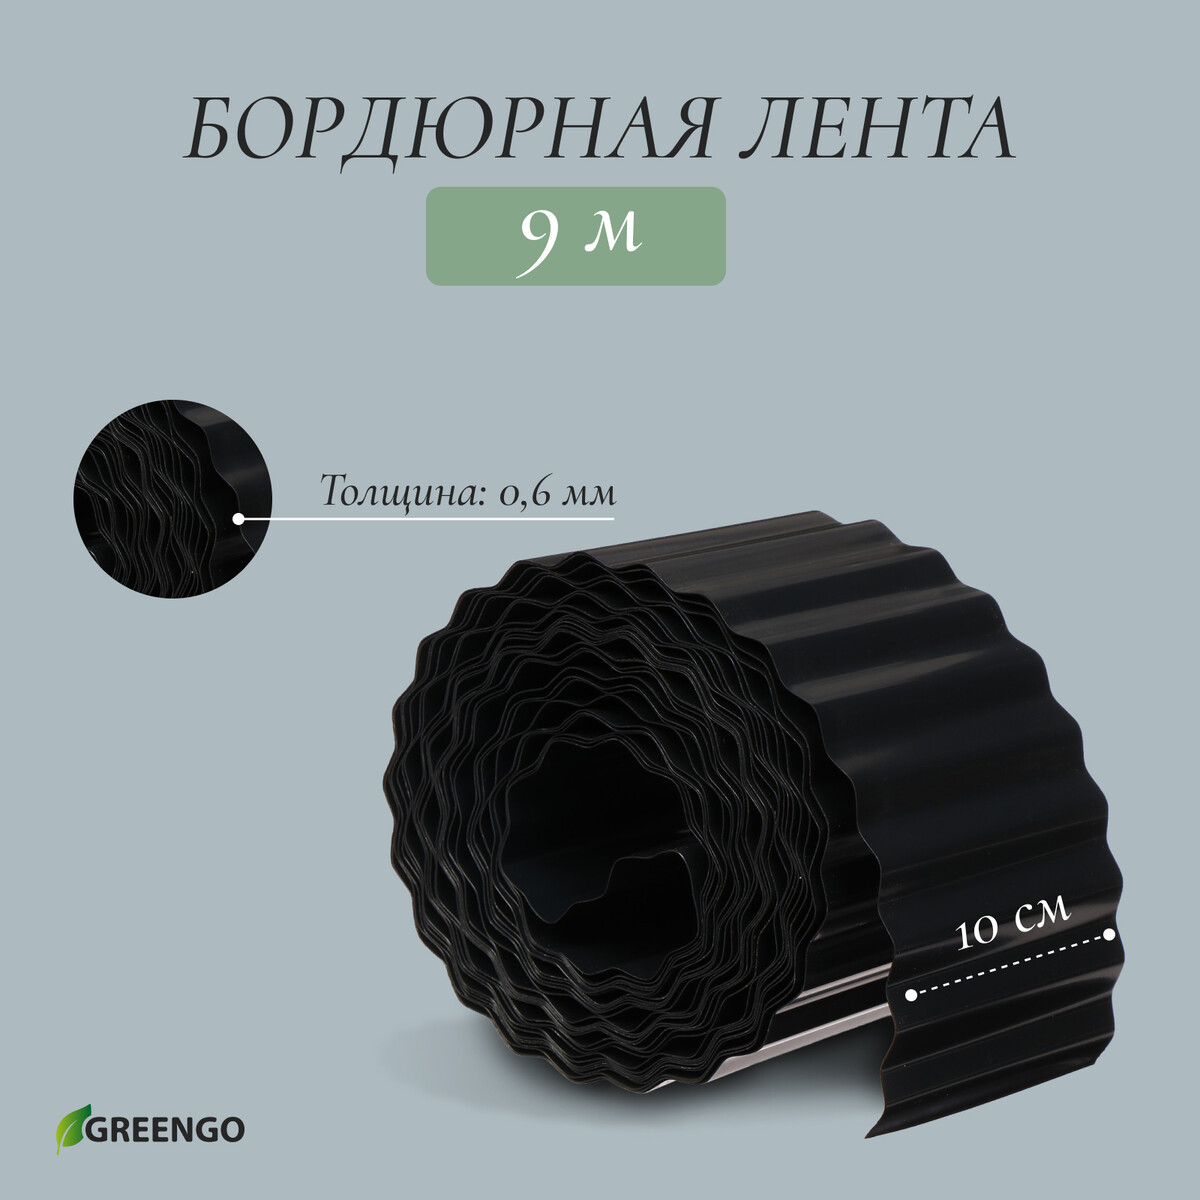 Лента бордюрная, 0.1 × 9 м, толщина 0.6 мм, пластиковая, гофра, черная, greengo